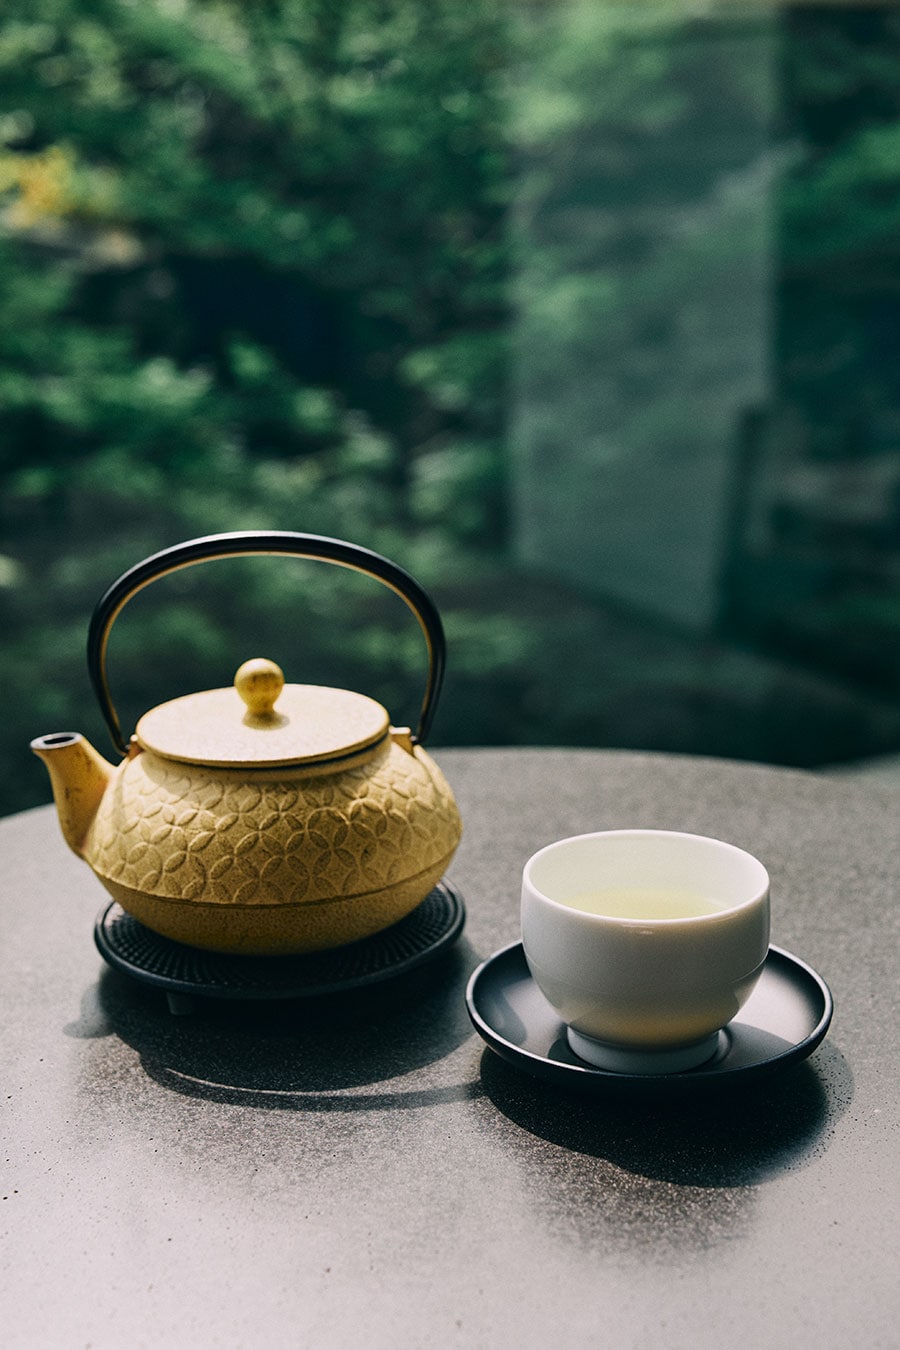 飲みやすさにこだわったというグリーンティーは、和束町にある上嶋爽禄園の茶師が特別にブレンド。香り高く凝縮された旨み、ほのかに感じる清涼感は、ホットでもアイスでも美味。